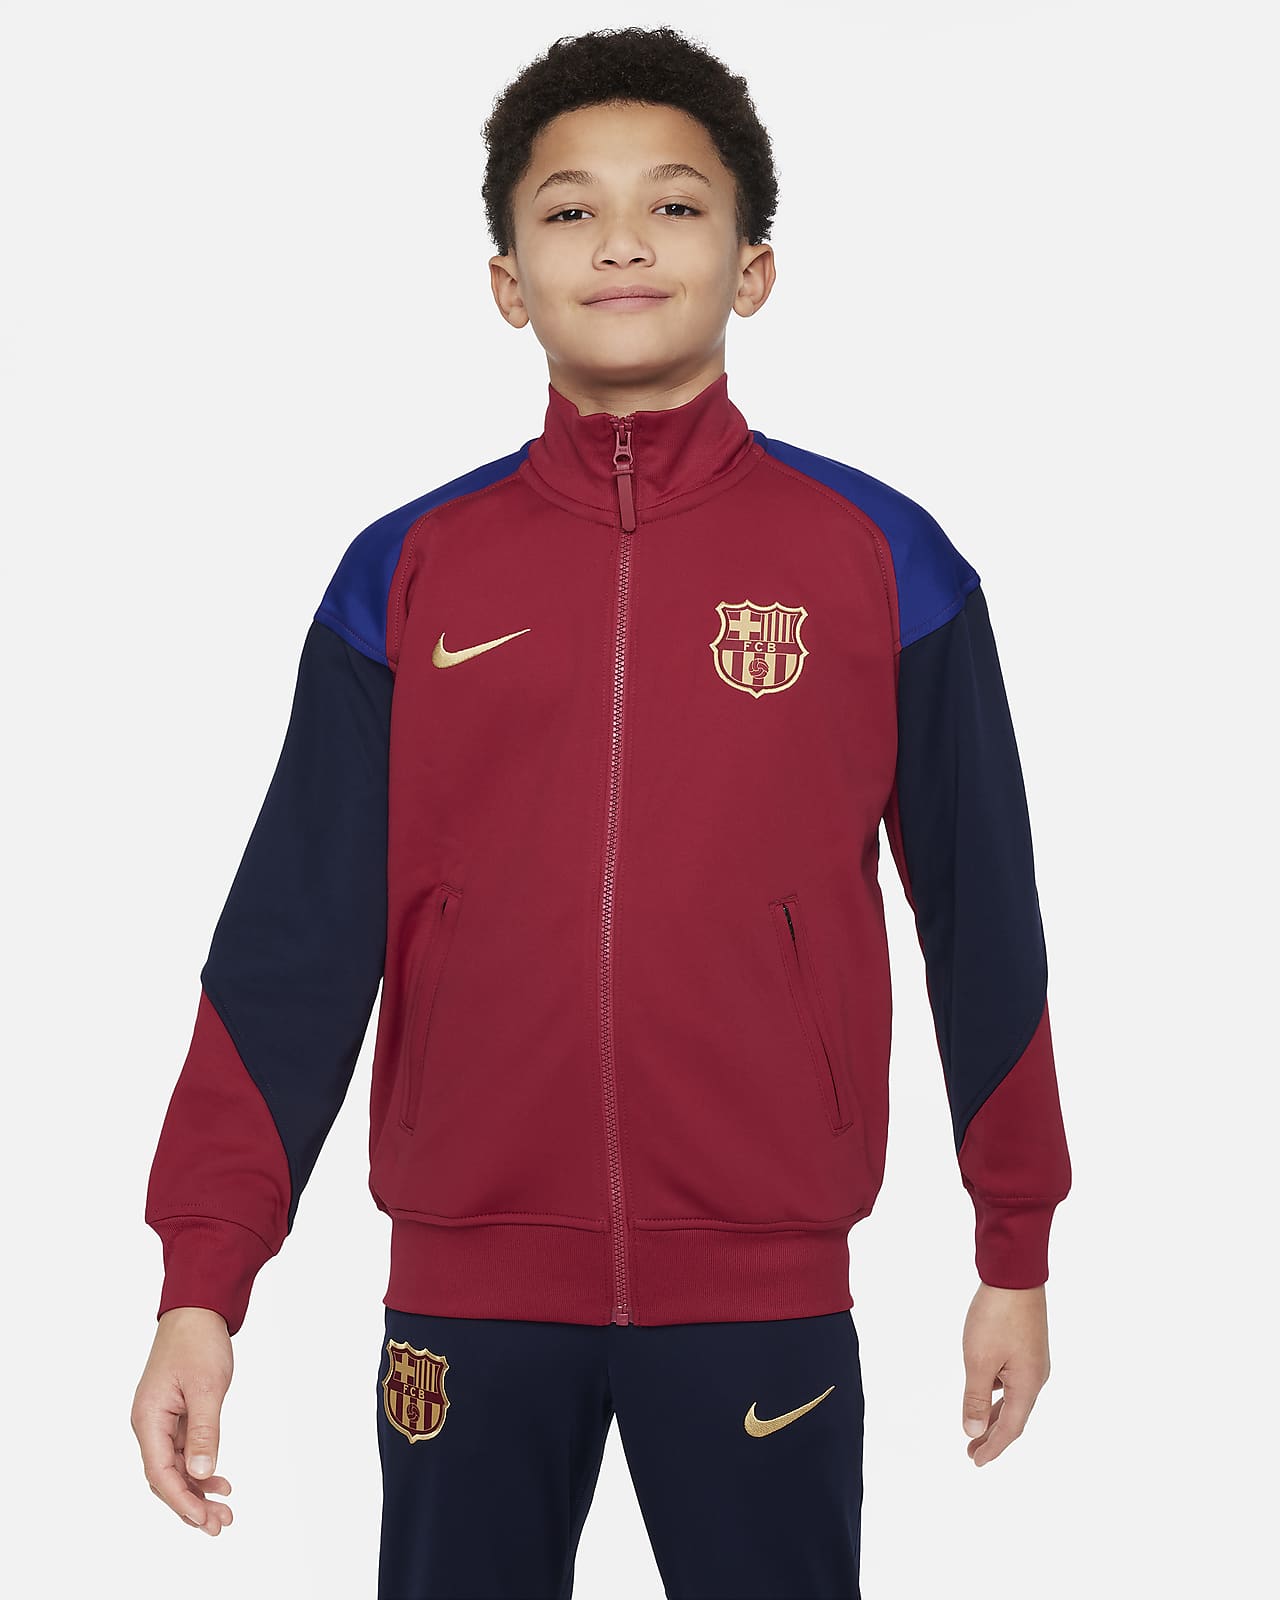 Pleteninová fotbalová bunda Nike Dri-FIT FC Barcelona Academy Pro Third pro větší děti